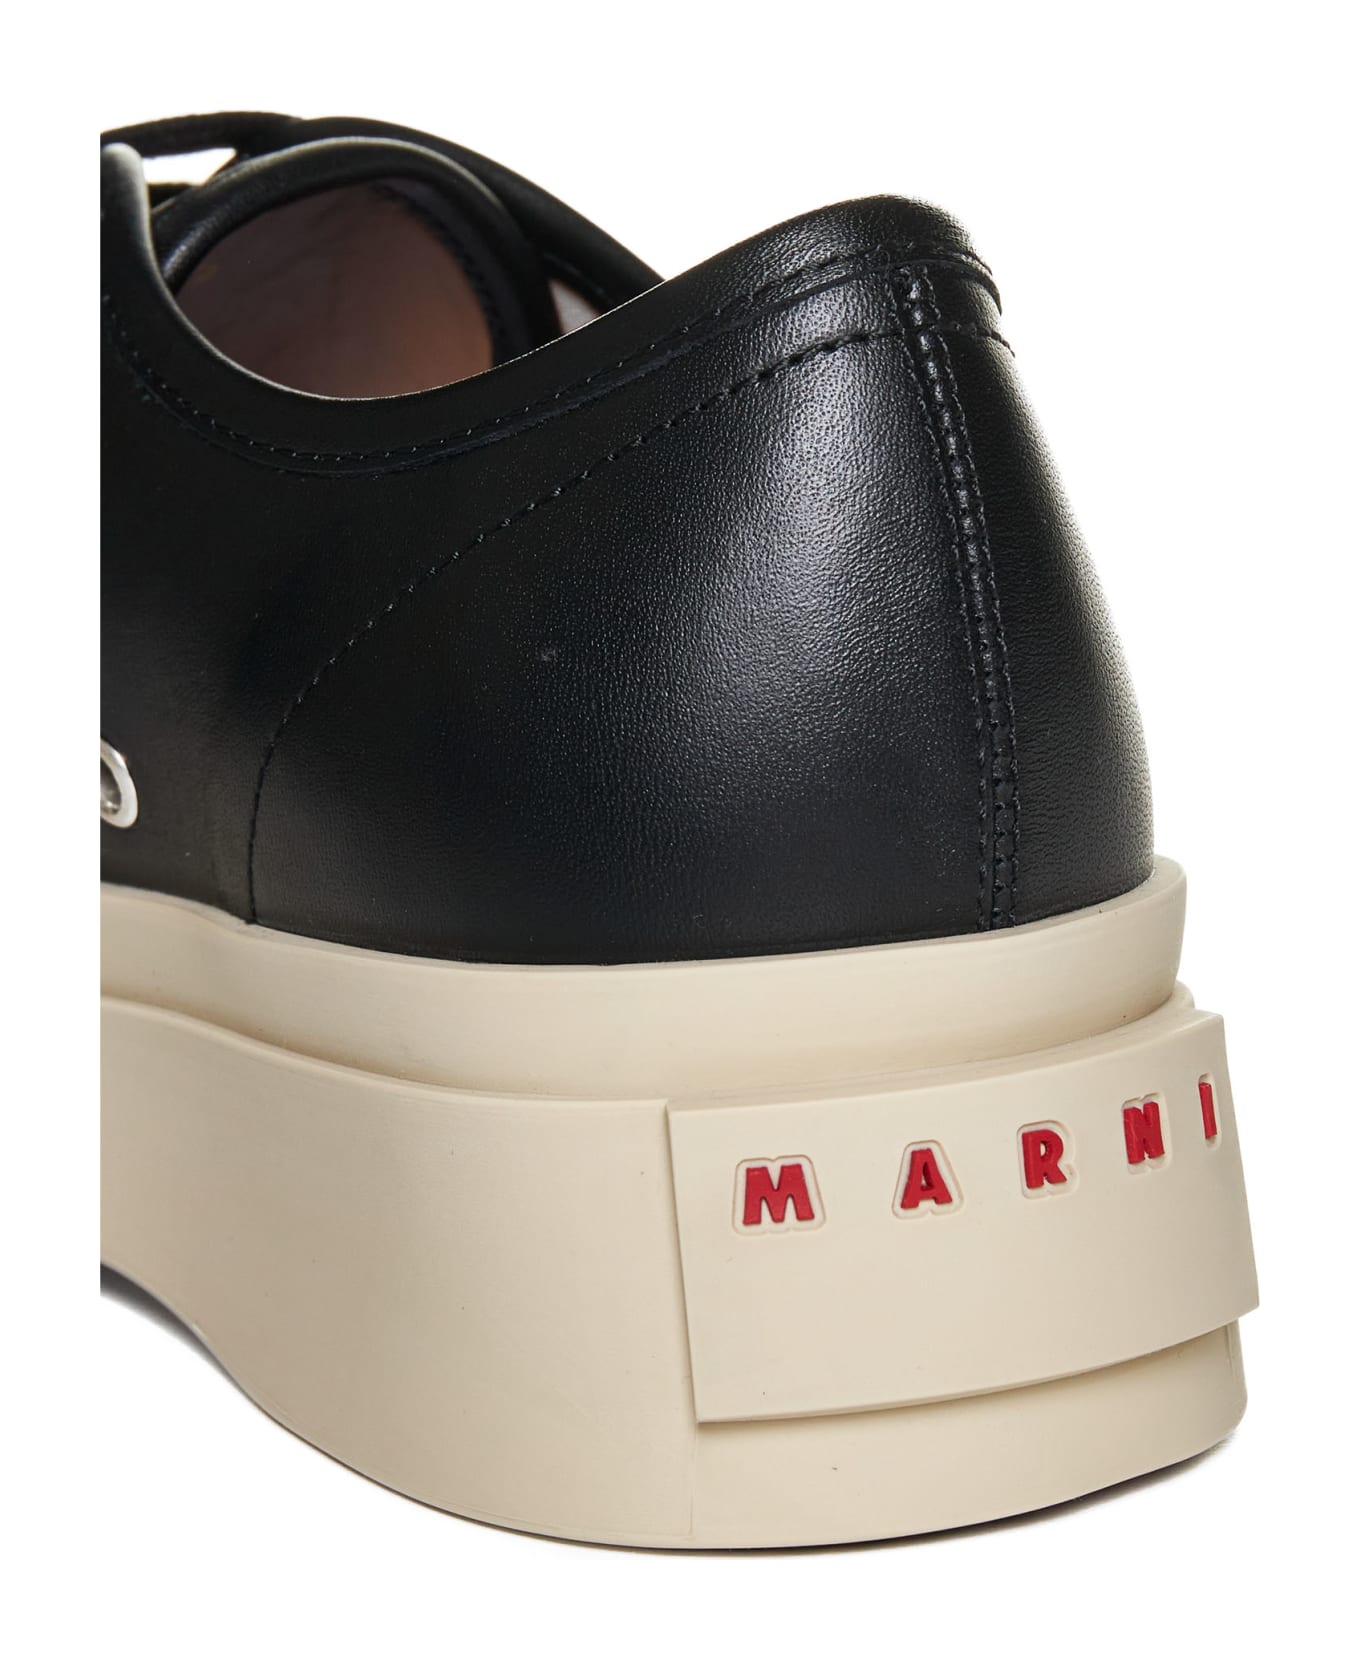 Marni Sneakers - Black ウェッジシューズ